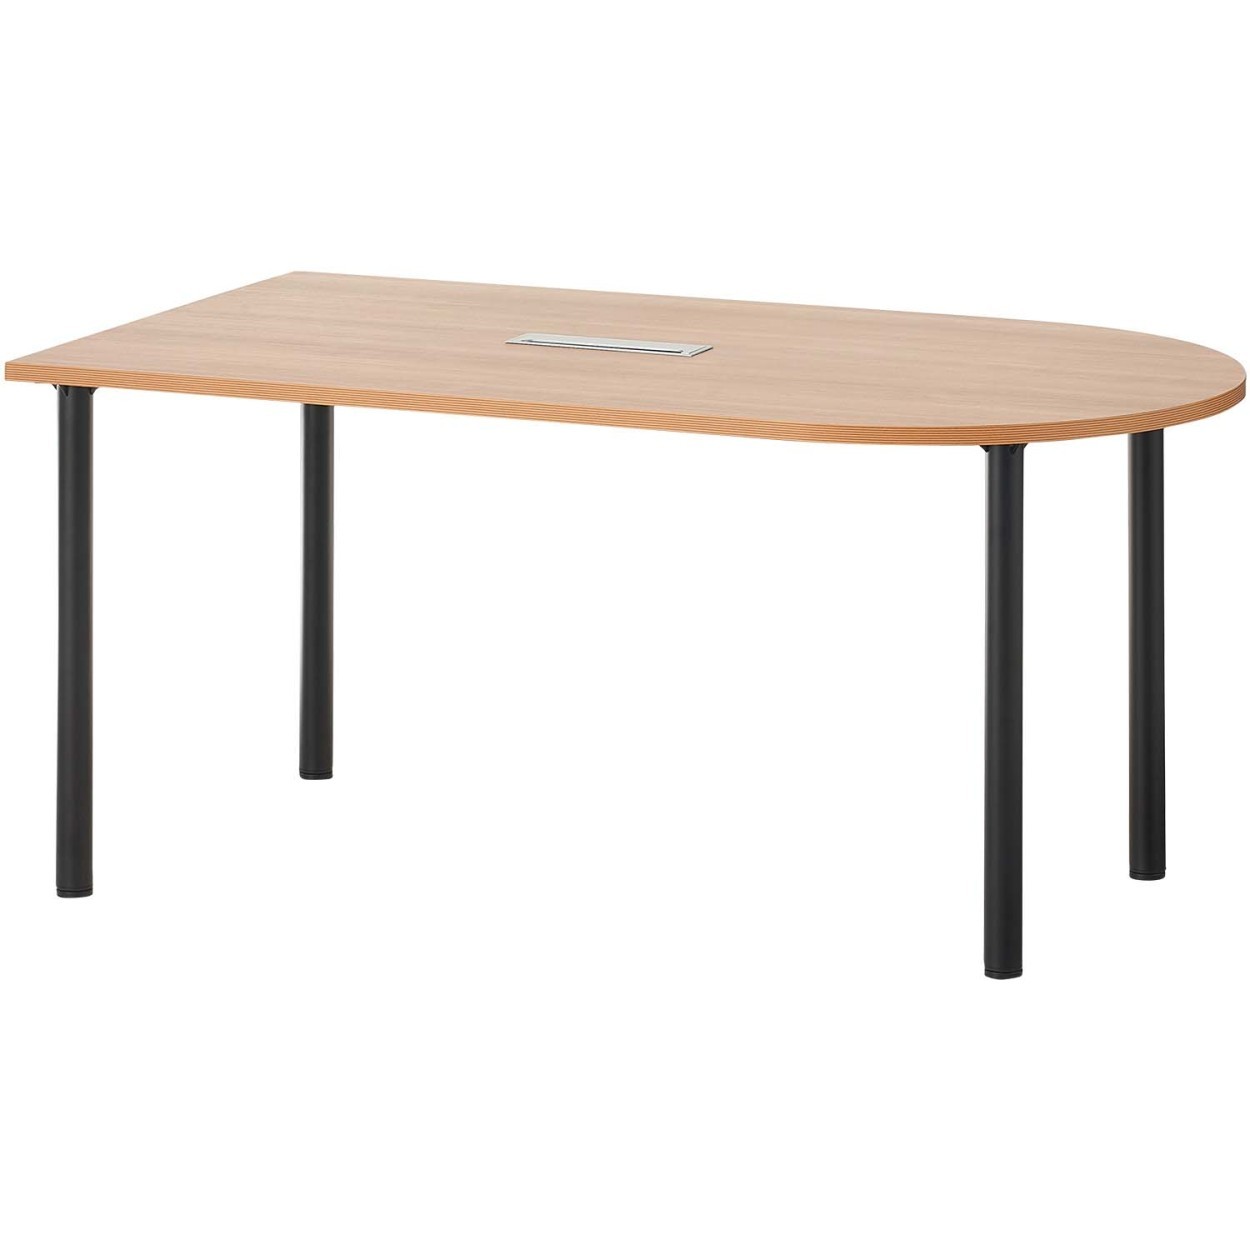 法人様限定 U型ミーティングテーブル2 おしゃれ 会議テーブル 半楕円型